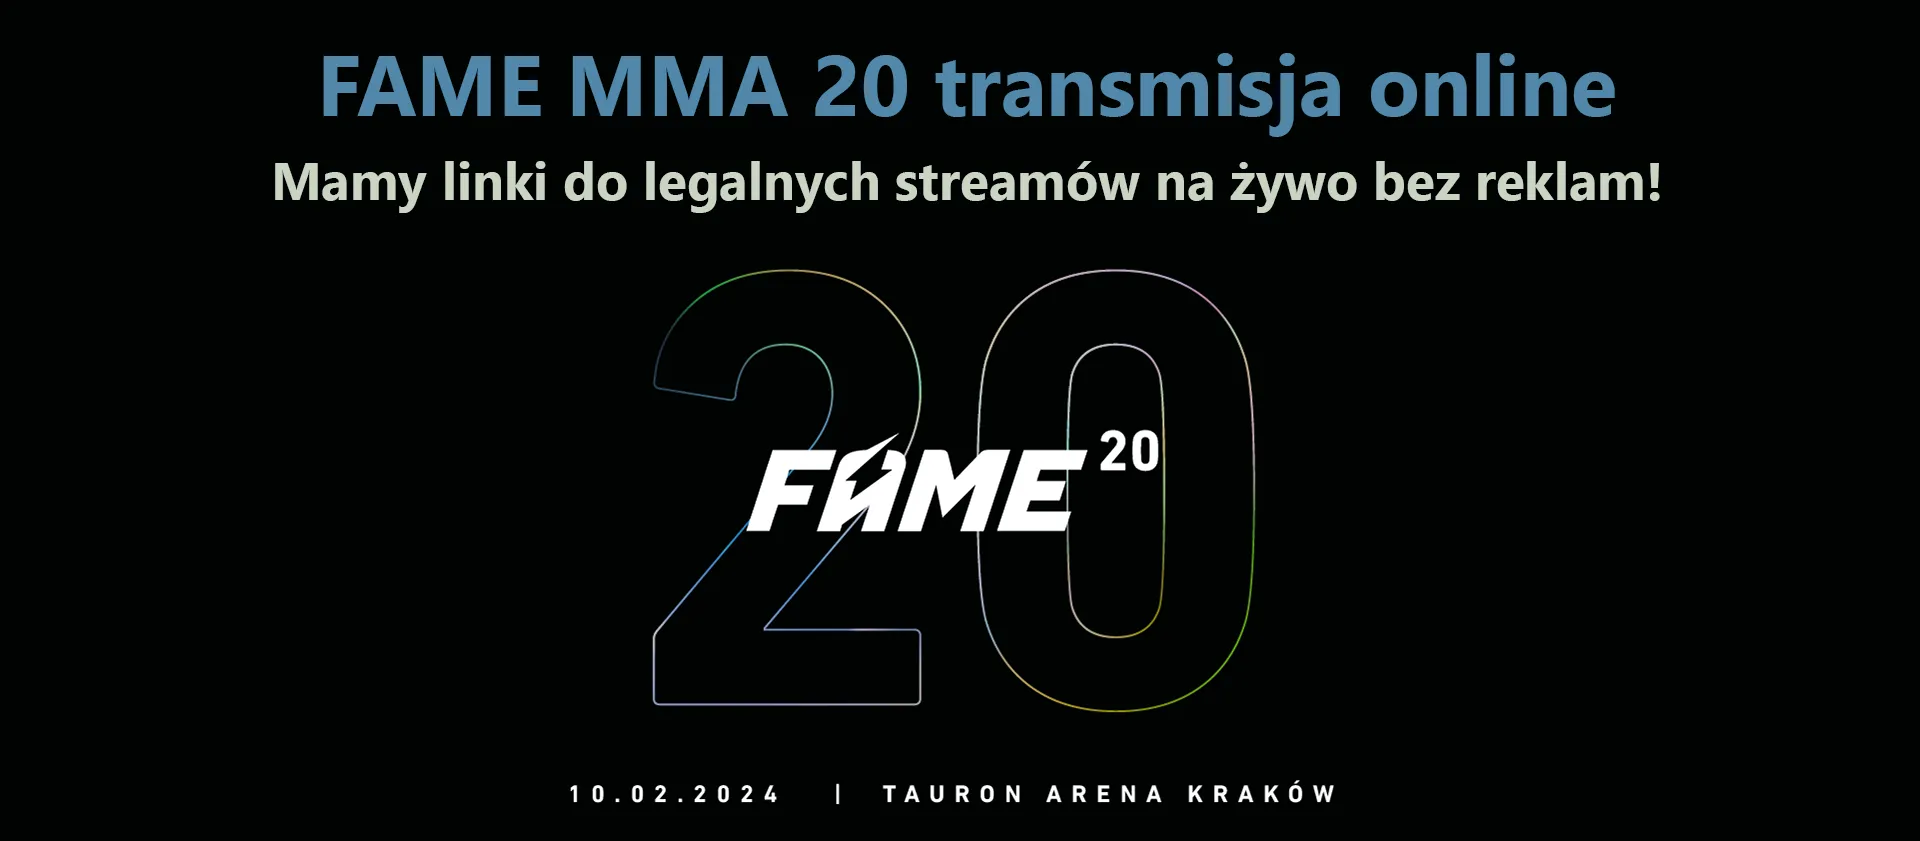 Transmisja online na żywo z FAME MMA 20. Legalny dostęp do transmisji w Polsce